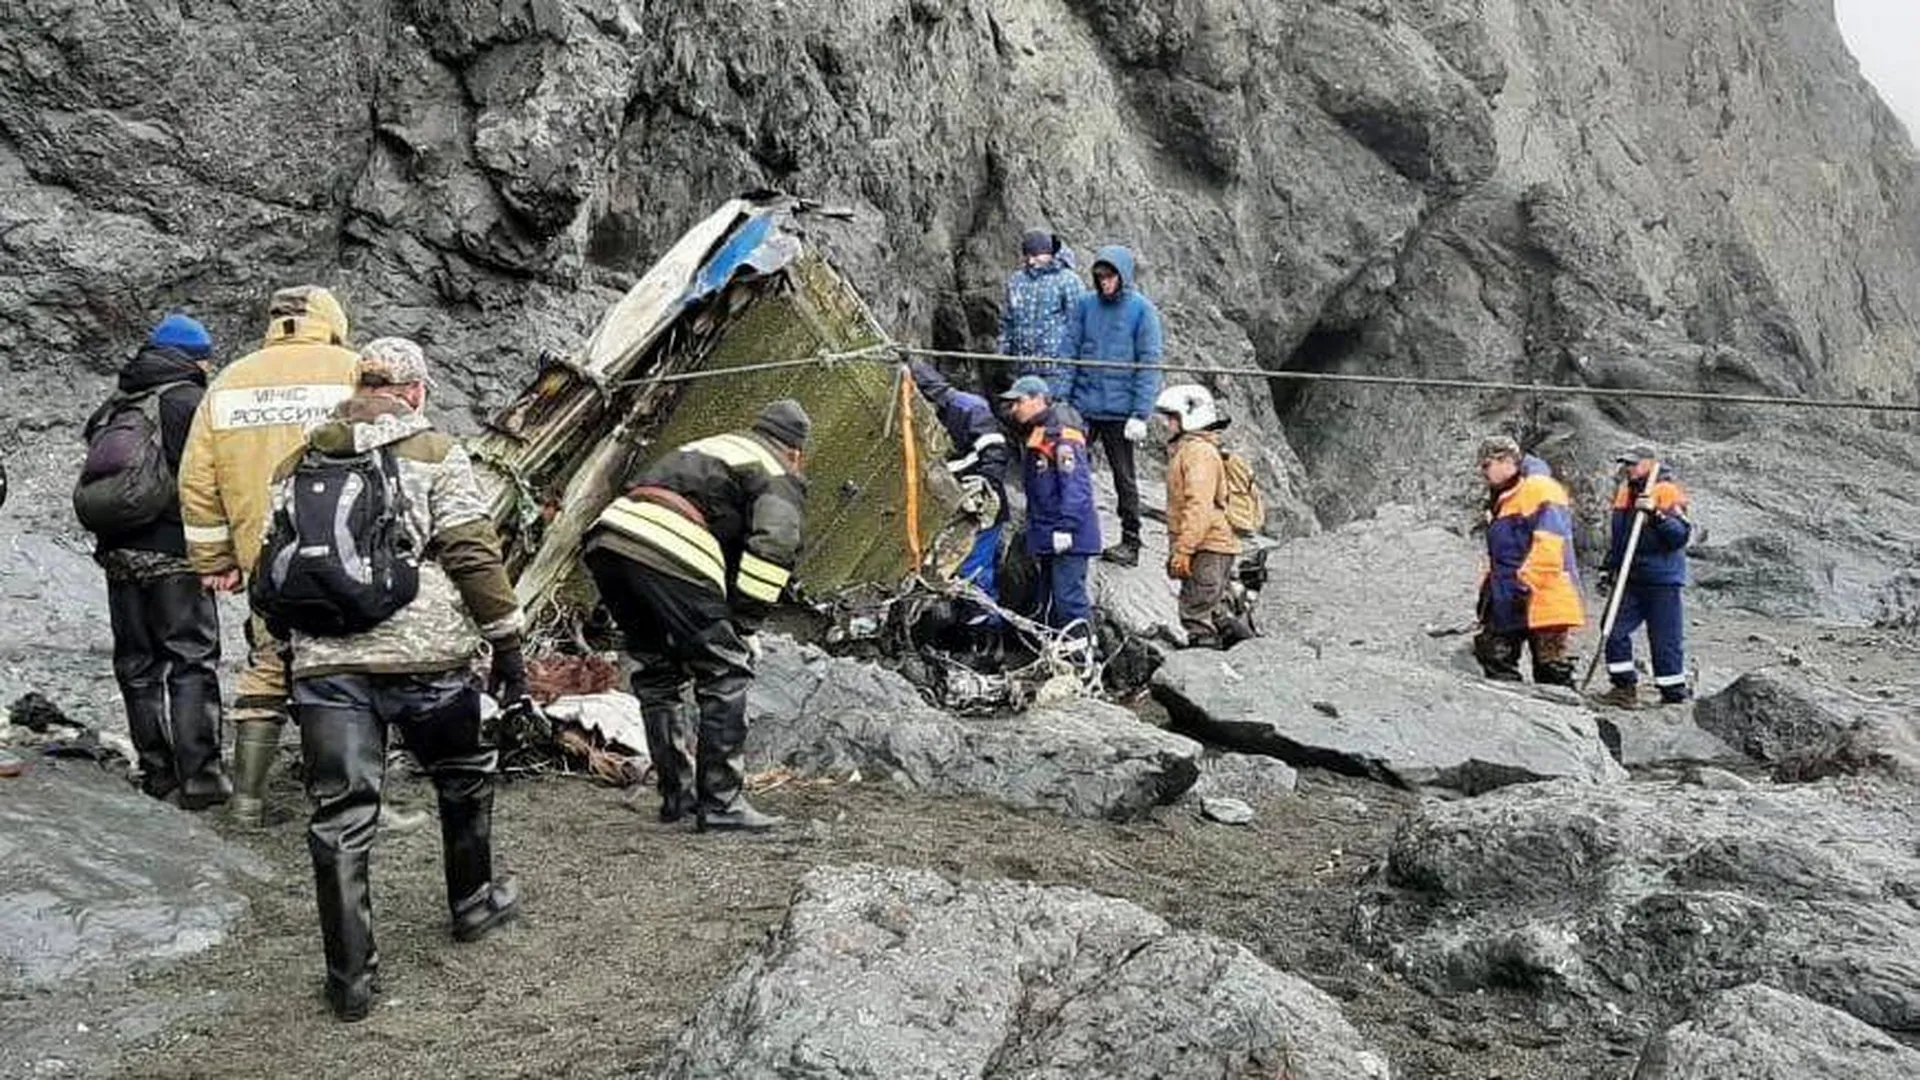 Спасатели обследовали 20 км побережья в районе крушения Ан-26 на Камчатке